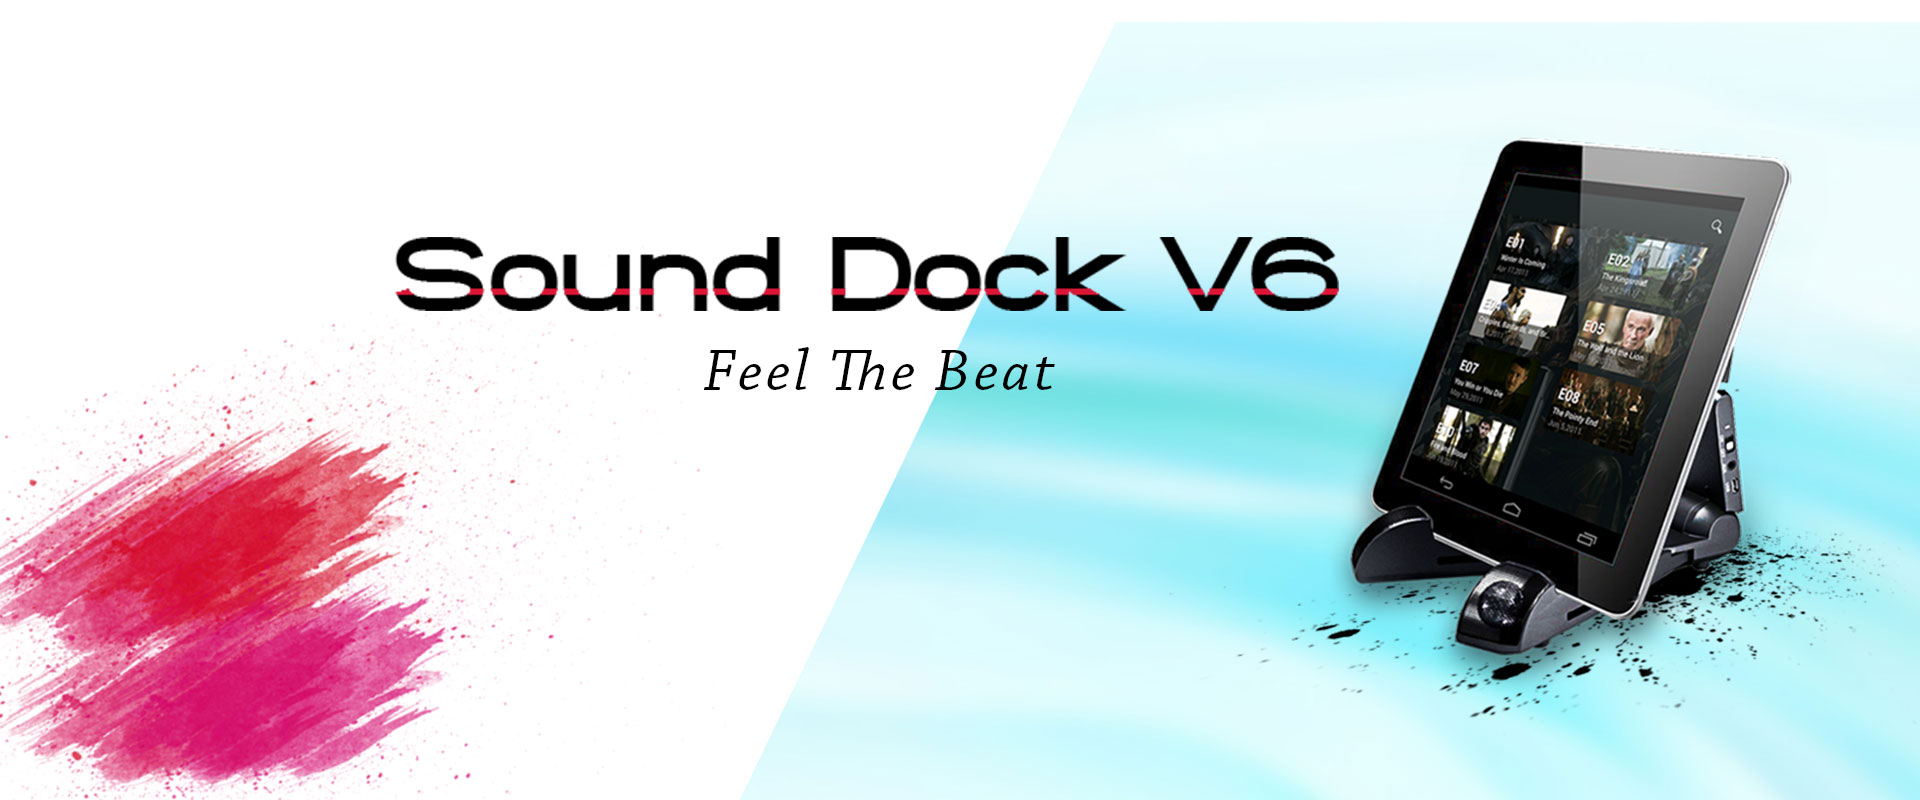 iZOTRON V6 Sound Dock